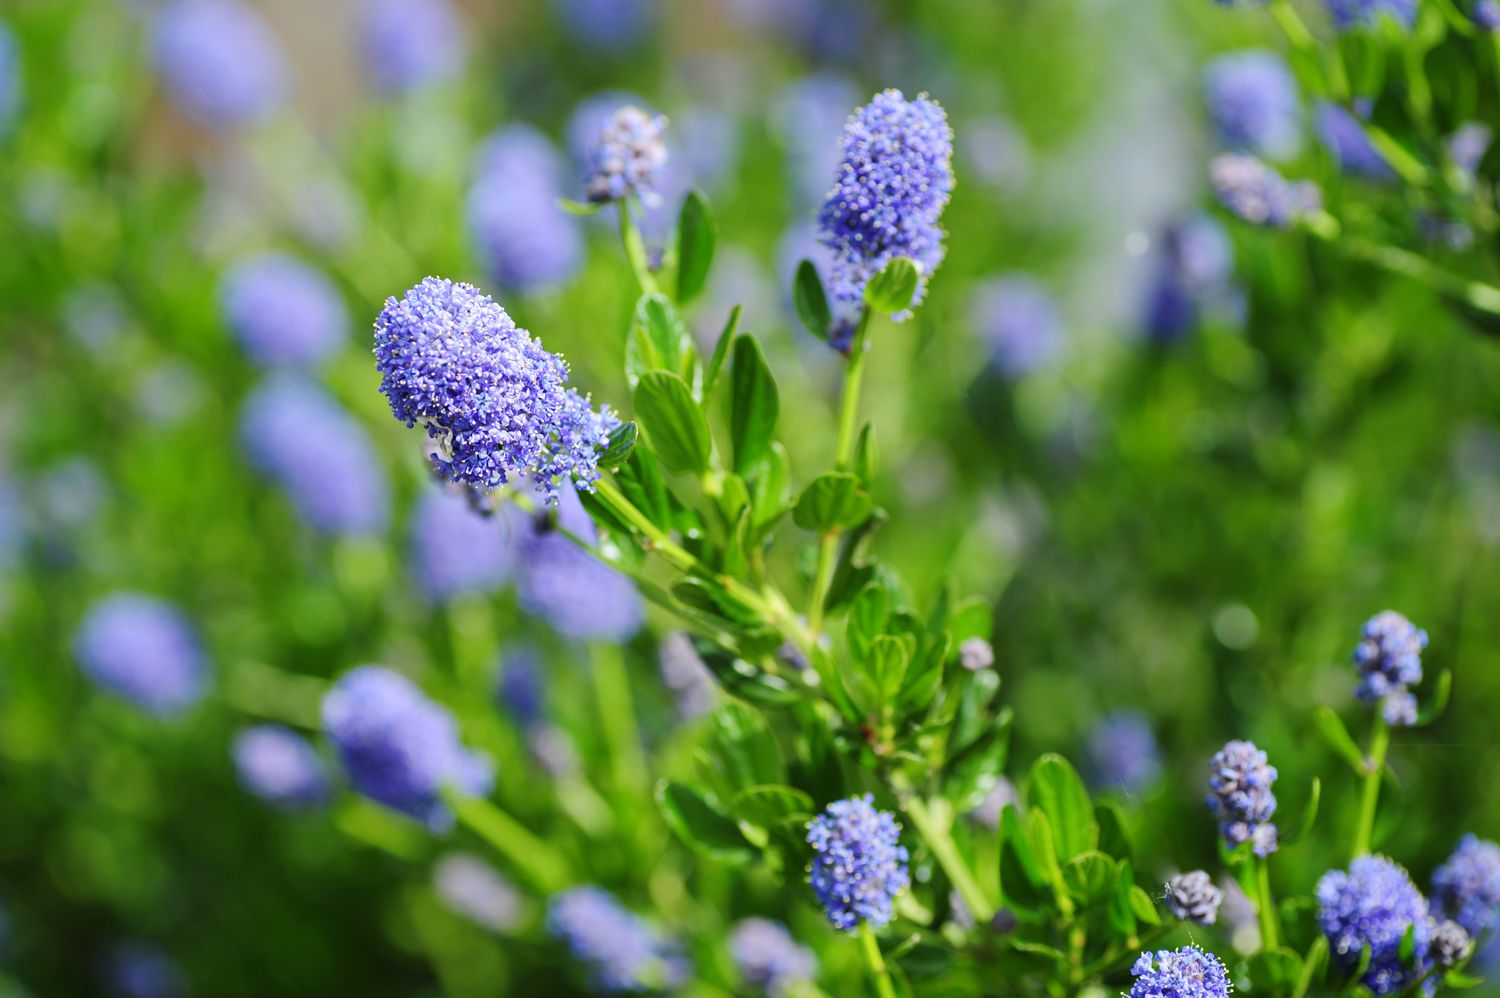 Blau blühende Ceanothus-Strauchzweige mit winzigen violett-blauen Blütenbüscheln an dünnen Stängeln mit eiförmigen Blättern in Großaufnahme